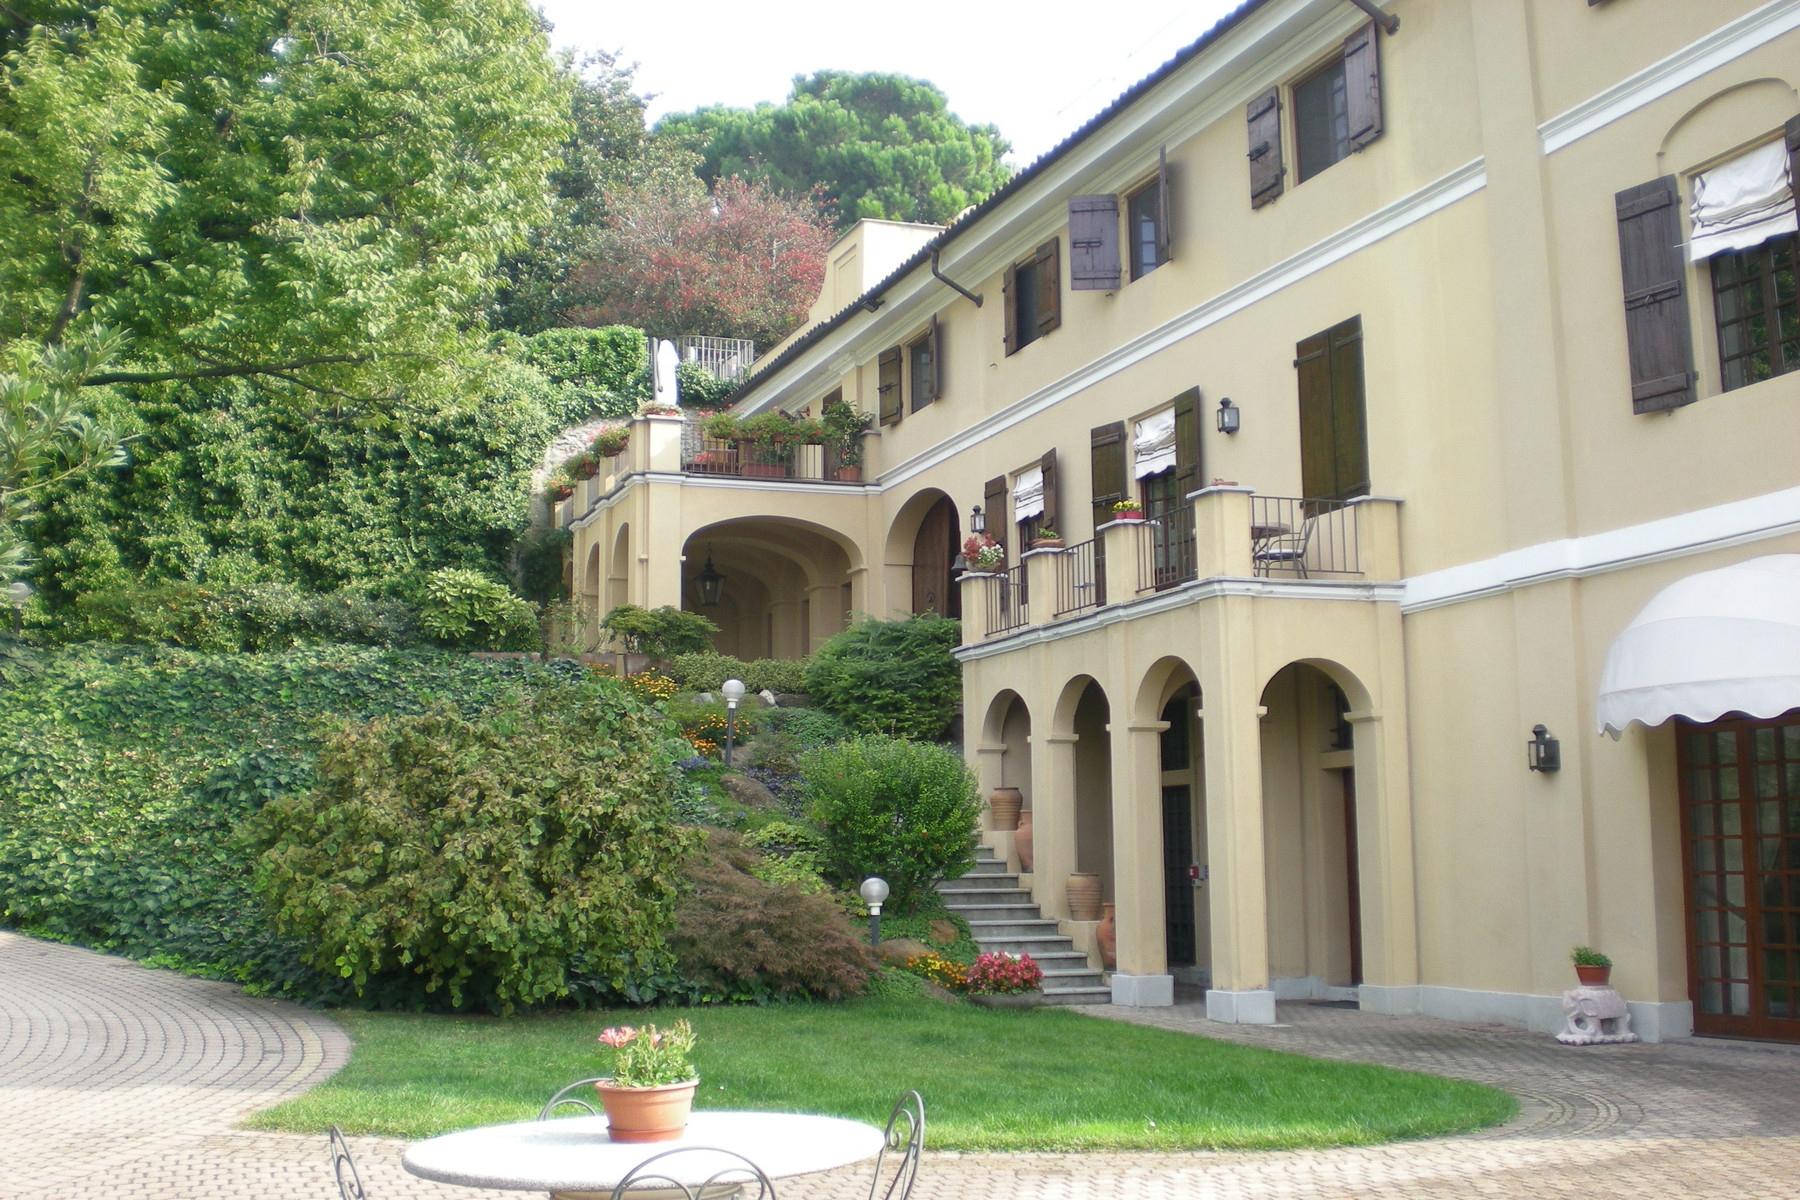 Prestigious historical villa with private garden and swimming pool - 1